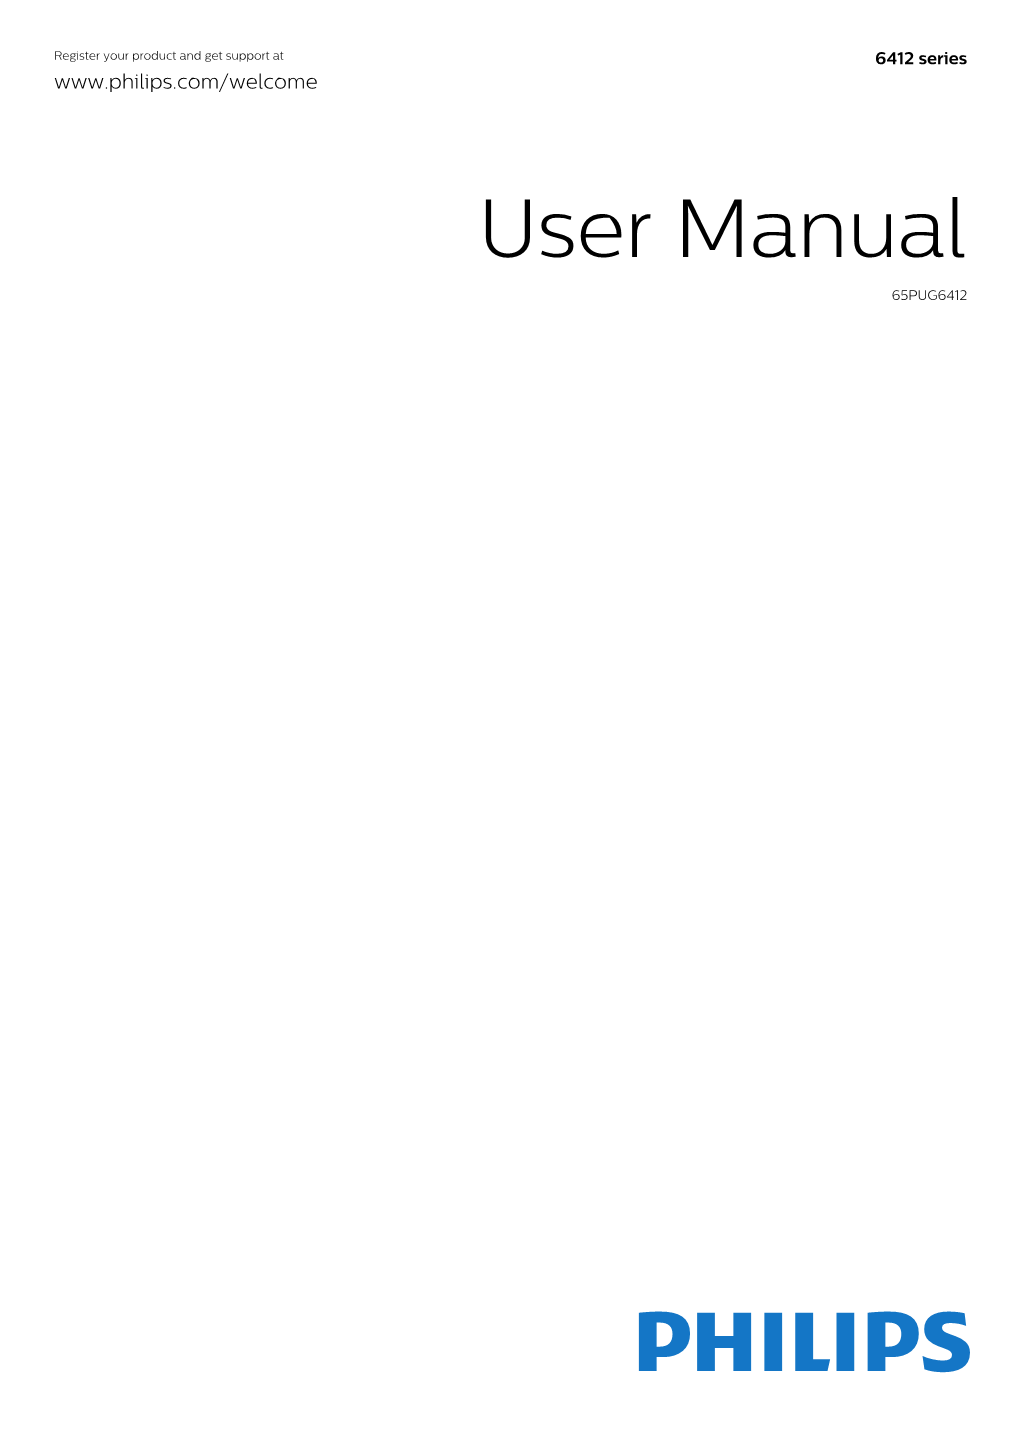 User Manual 65PUG6412 Contents